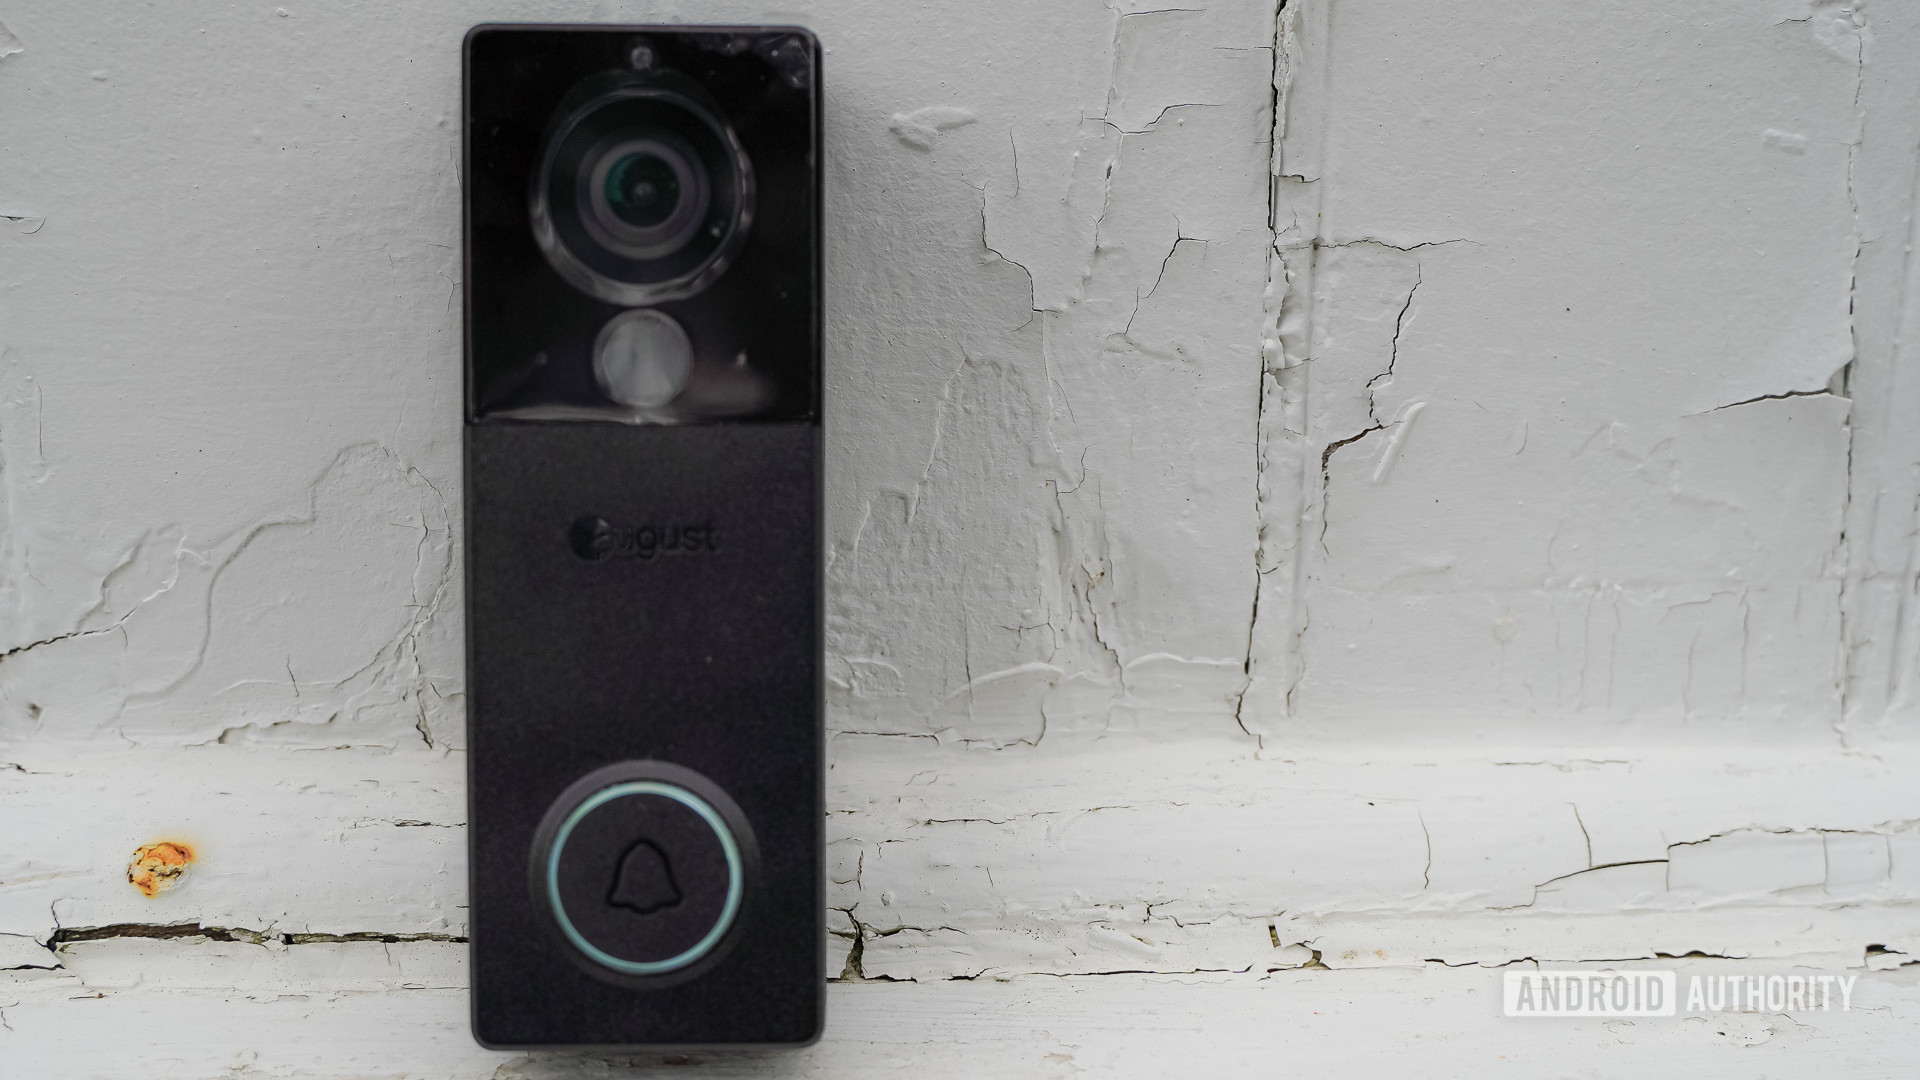 August View video doorbell standing